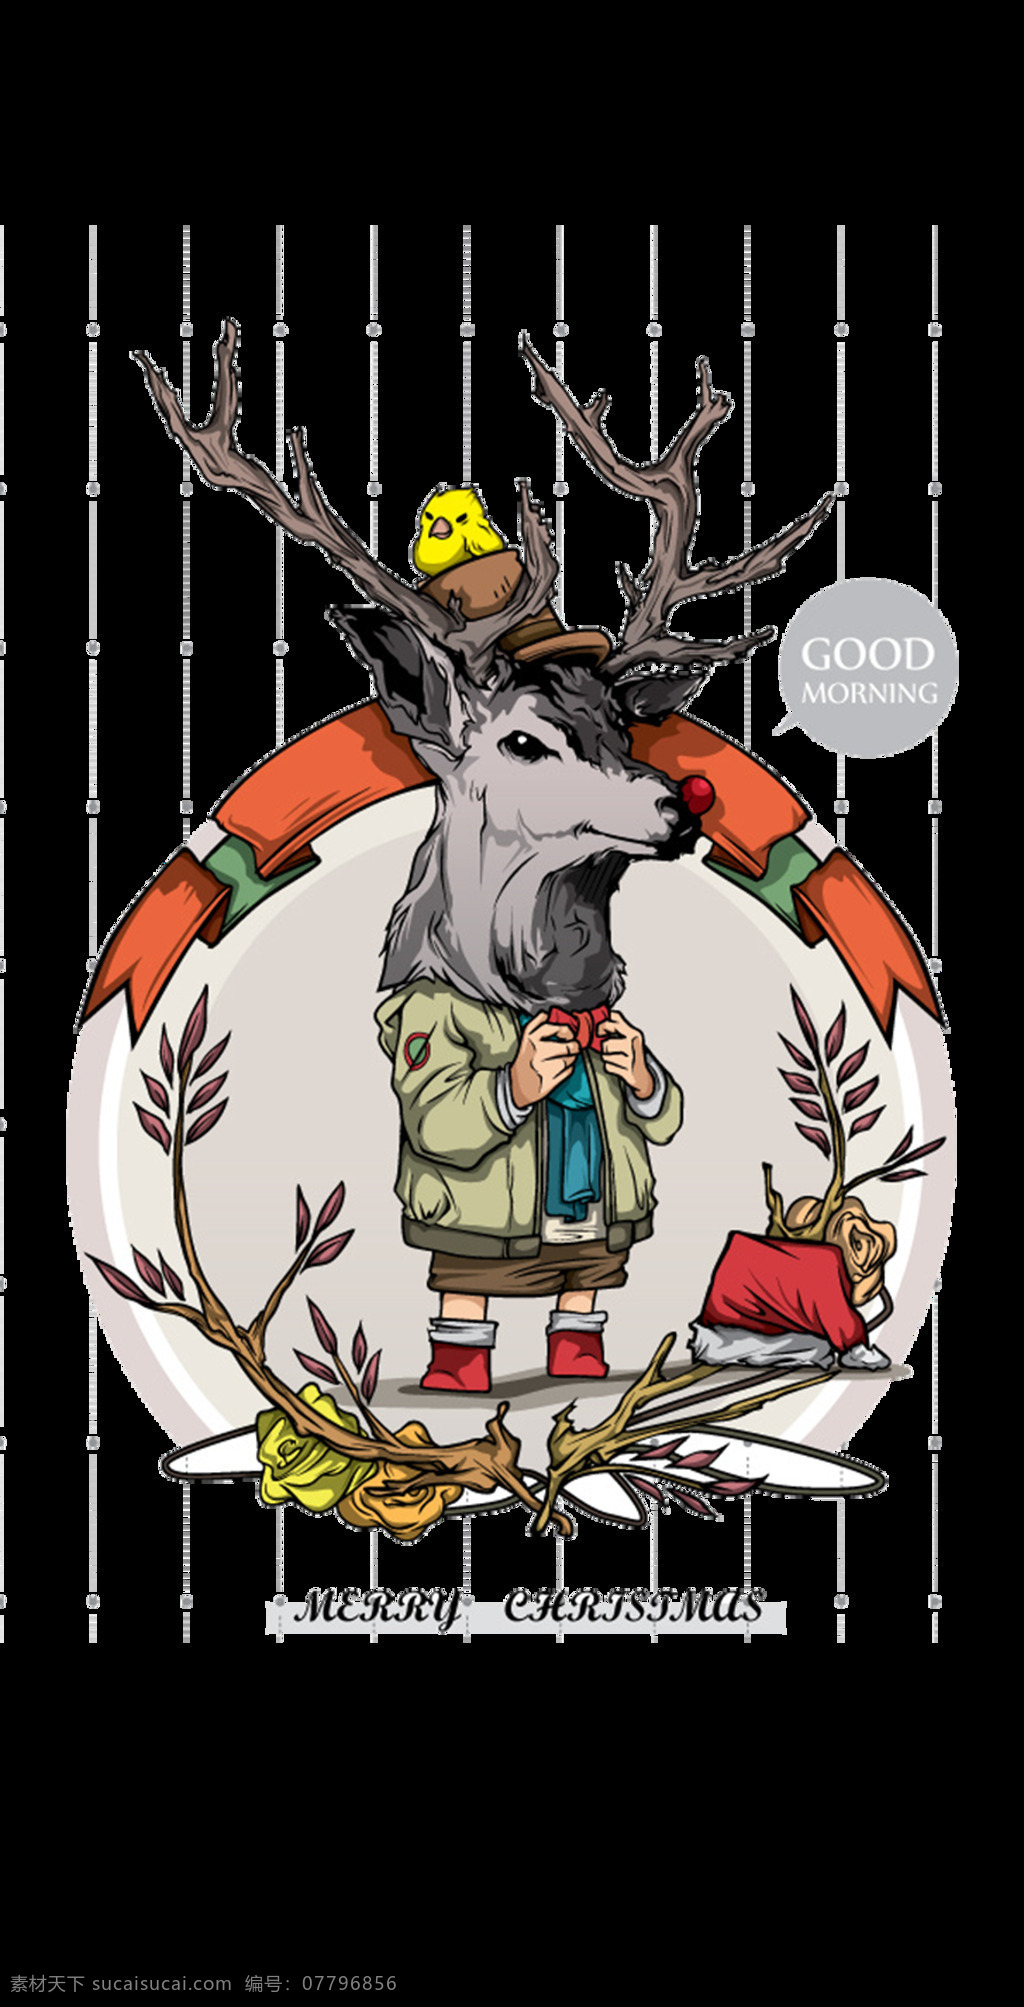 抽象 圣诞节 装饰 麋鹿 元素 christmas merry 麋鹿下载 平安夜 设计素材 圣诞节装饰 圣诞麋鹿 圣诞素材 圣诞元素下载 新年快乐